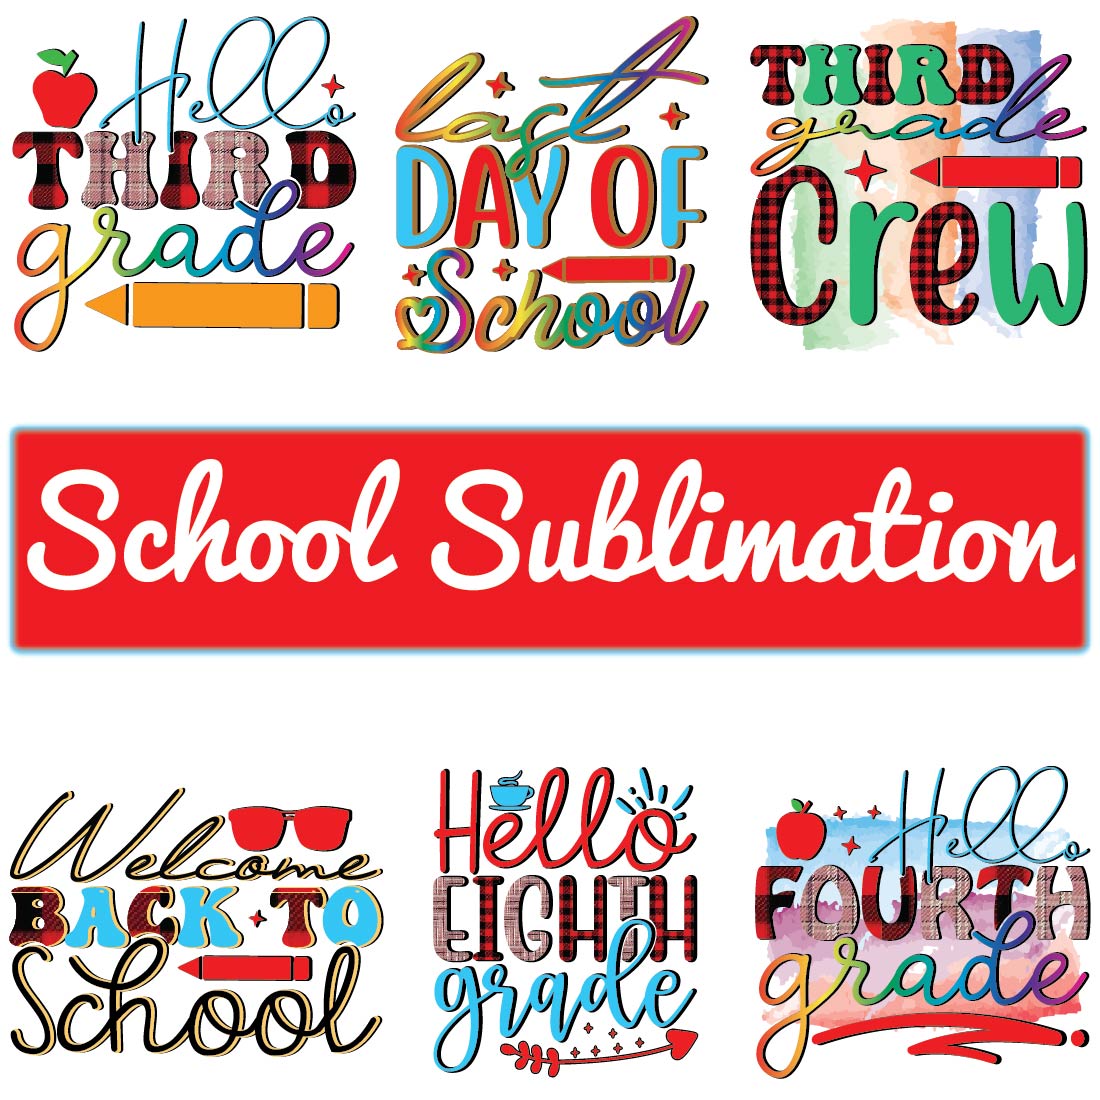 School Sublimation Bundle preview image.